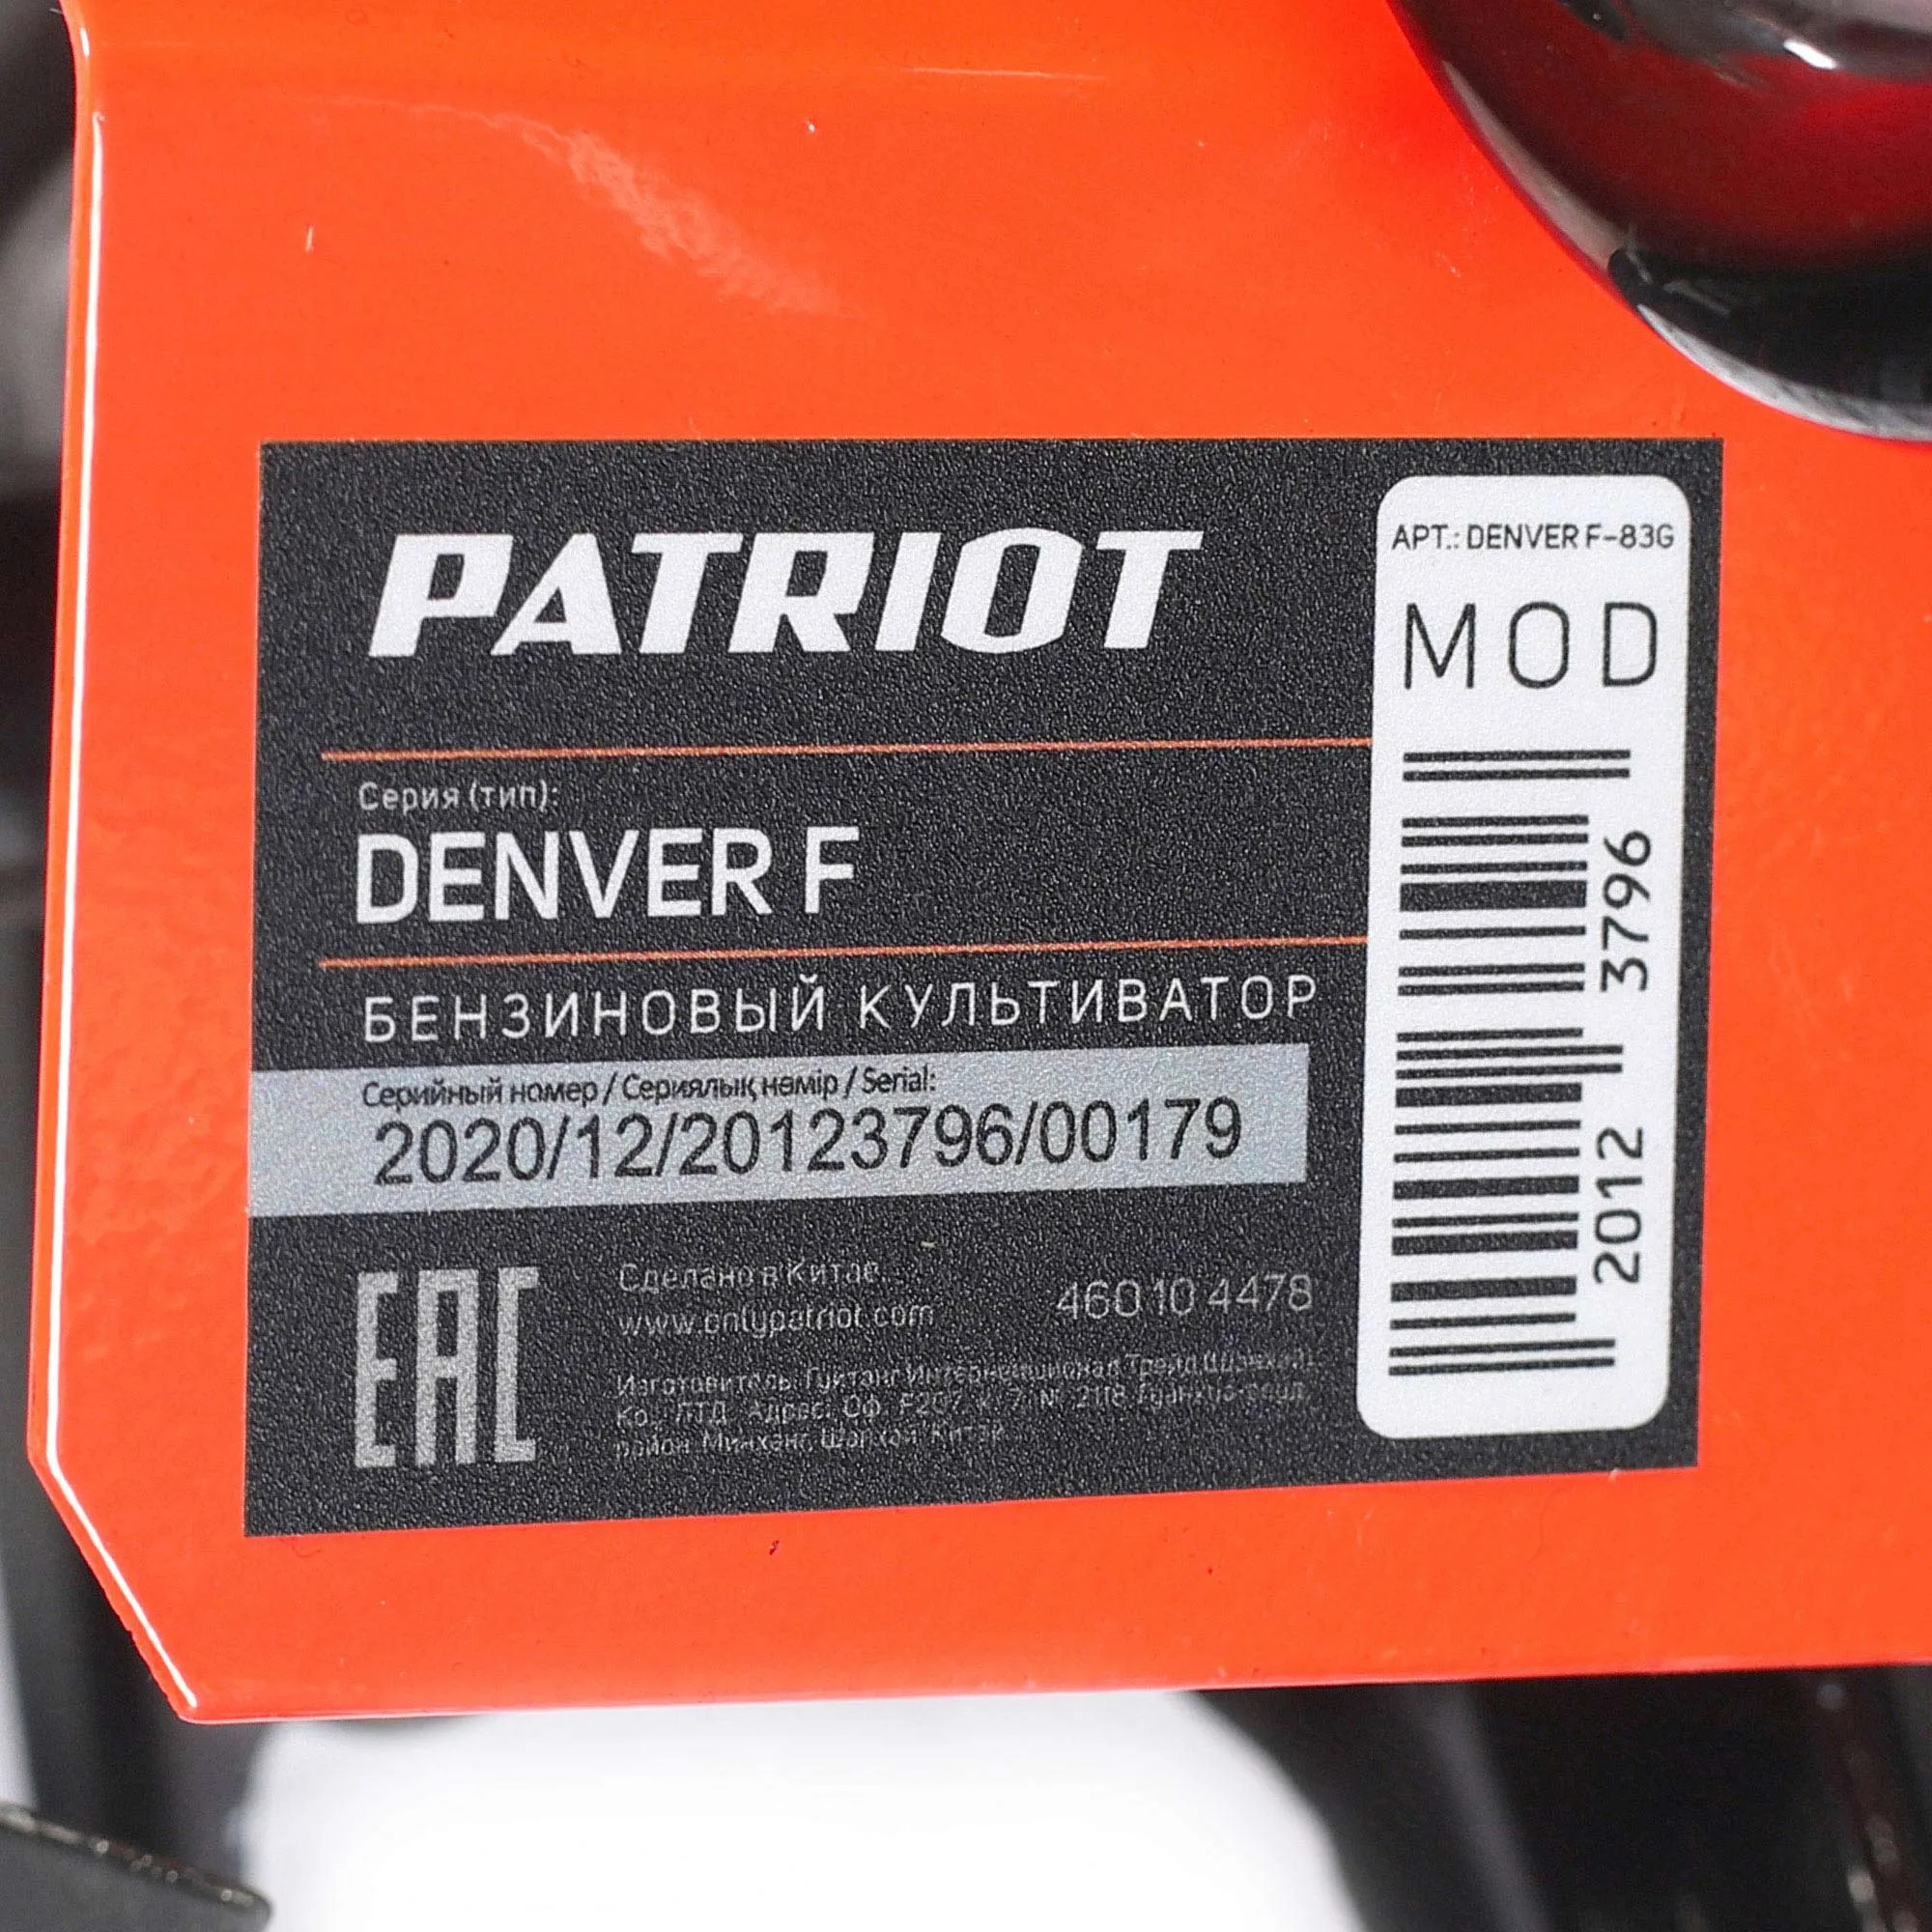 Культиватор бензиновый PATRIOT Denver F 460104478